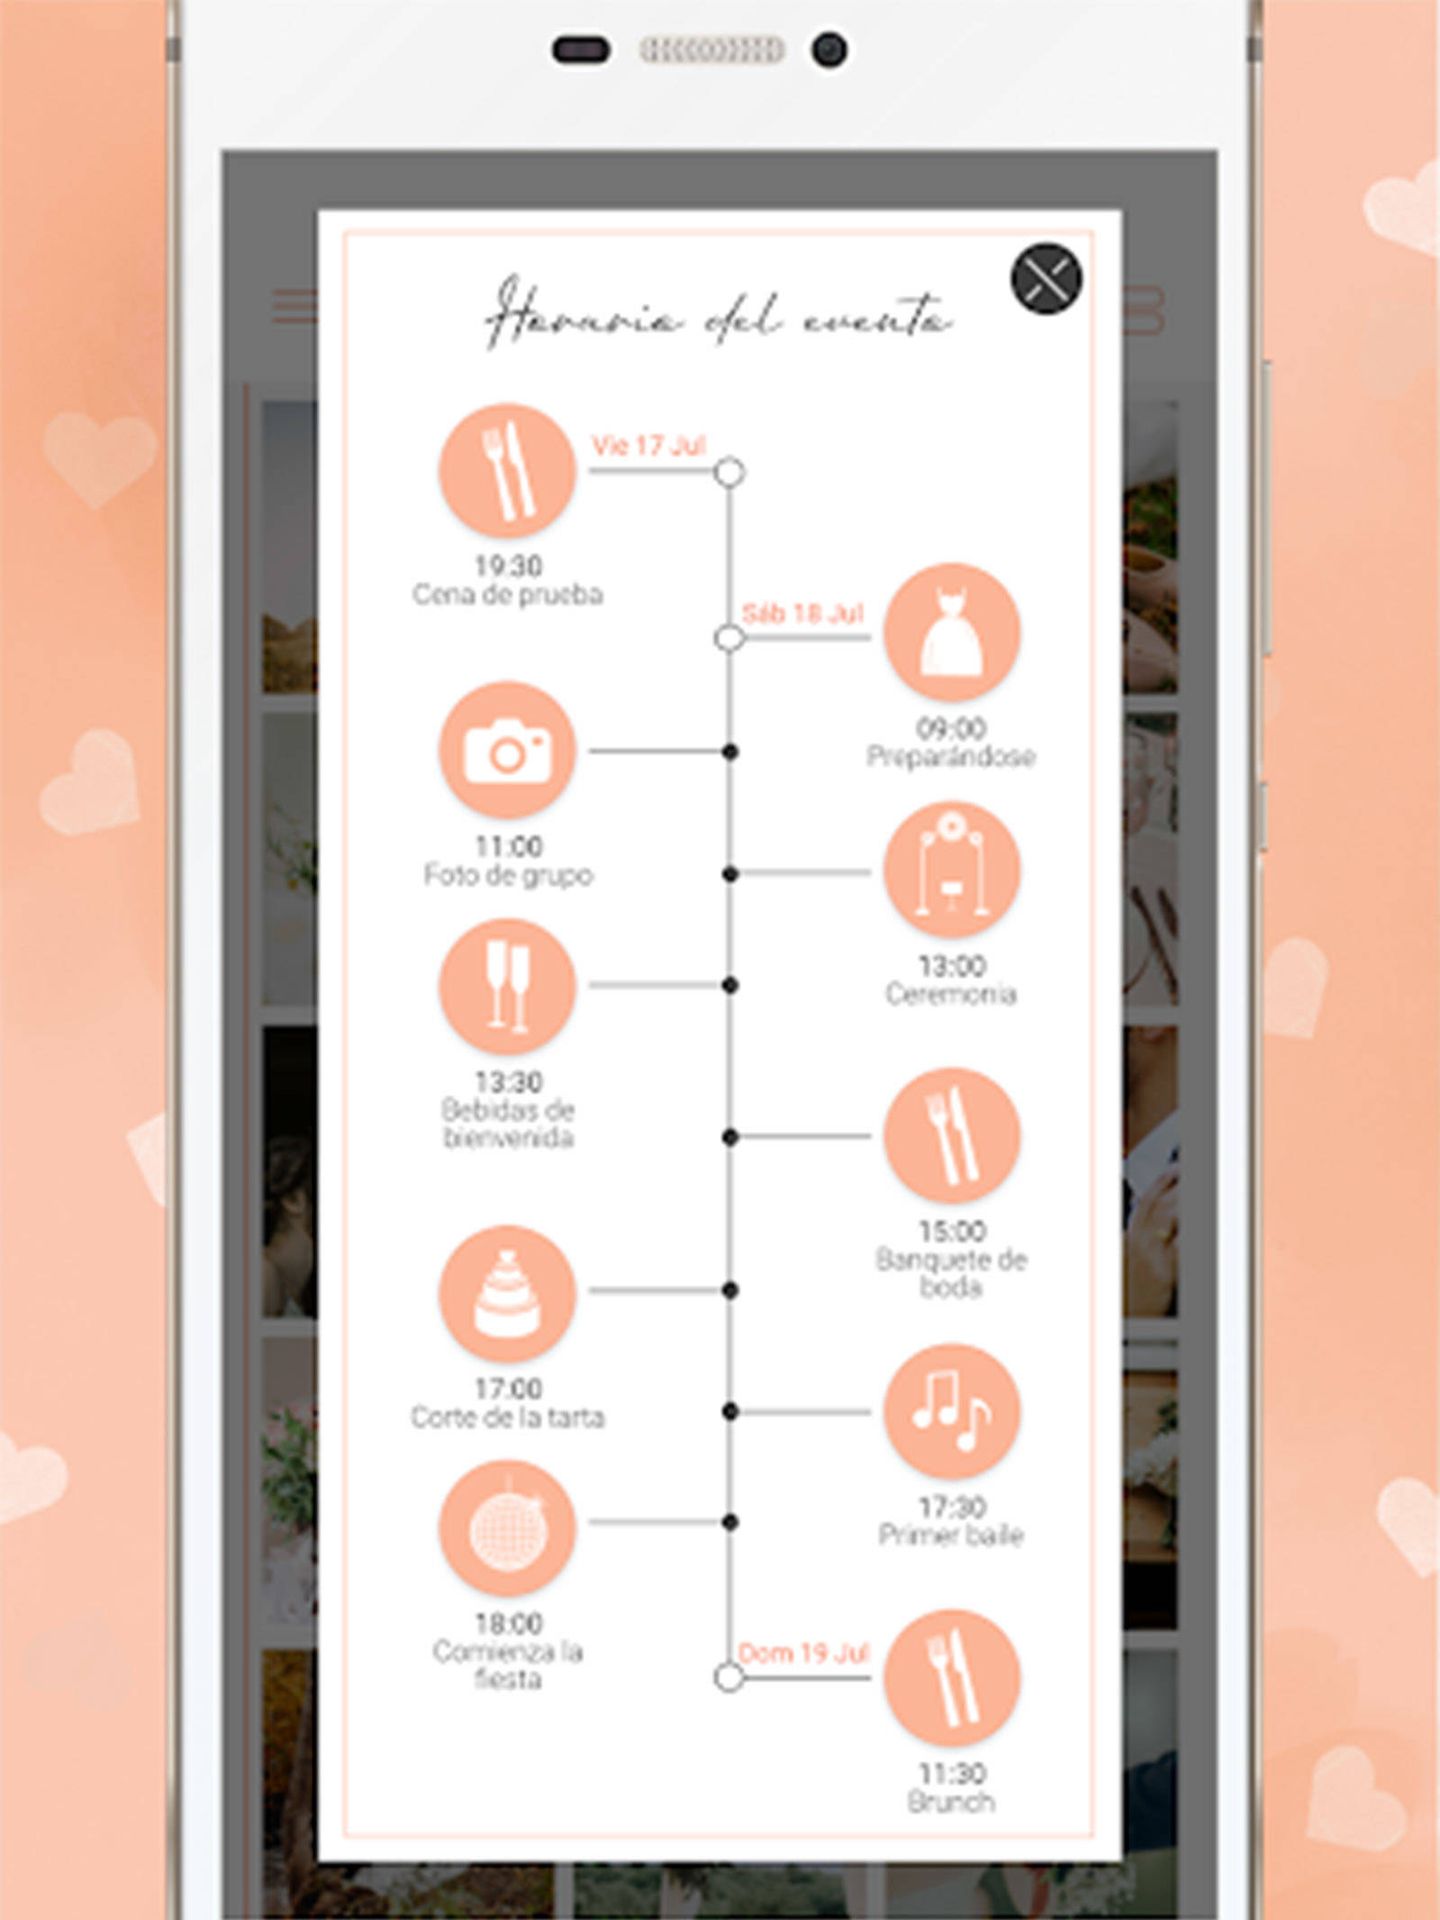 En Wedbox los novios también pueden compartir su itinerario de boda. (Cortesía)